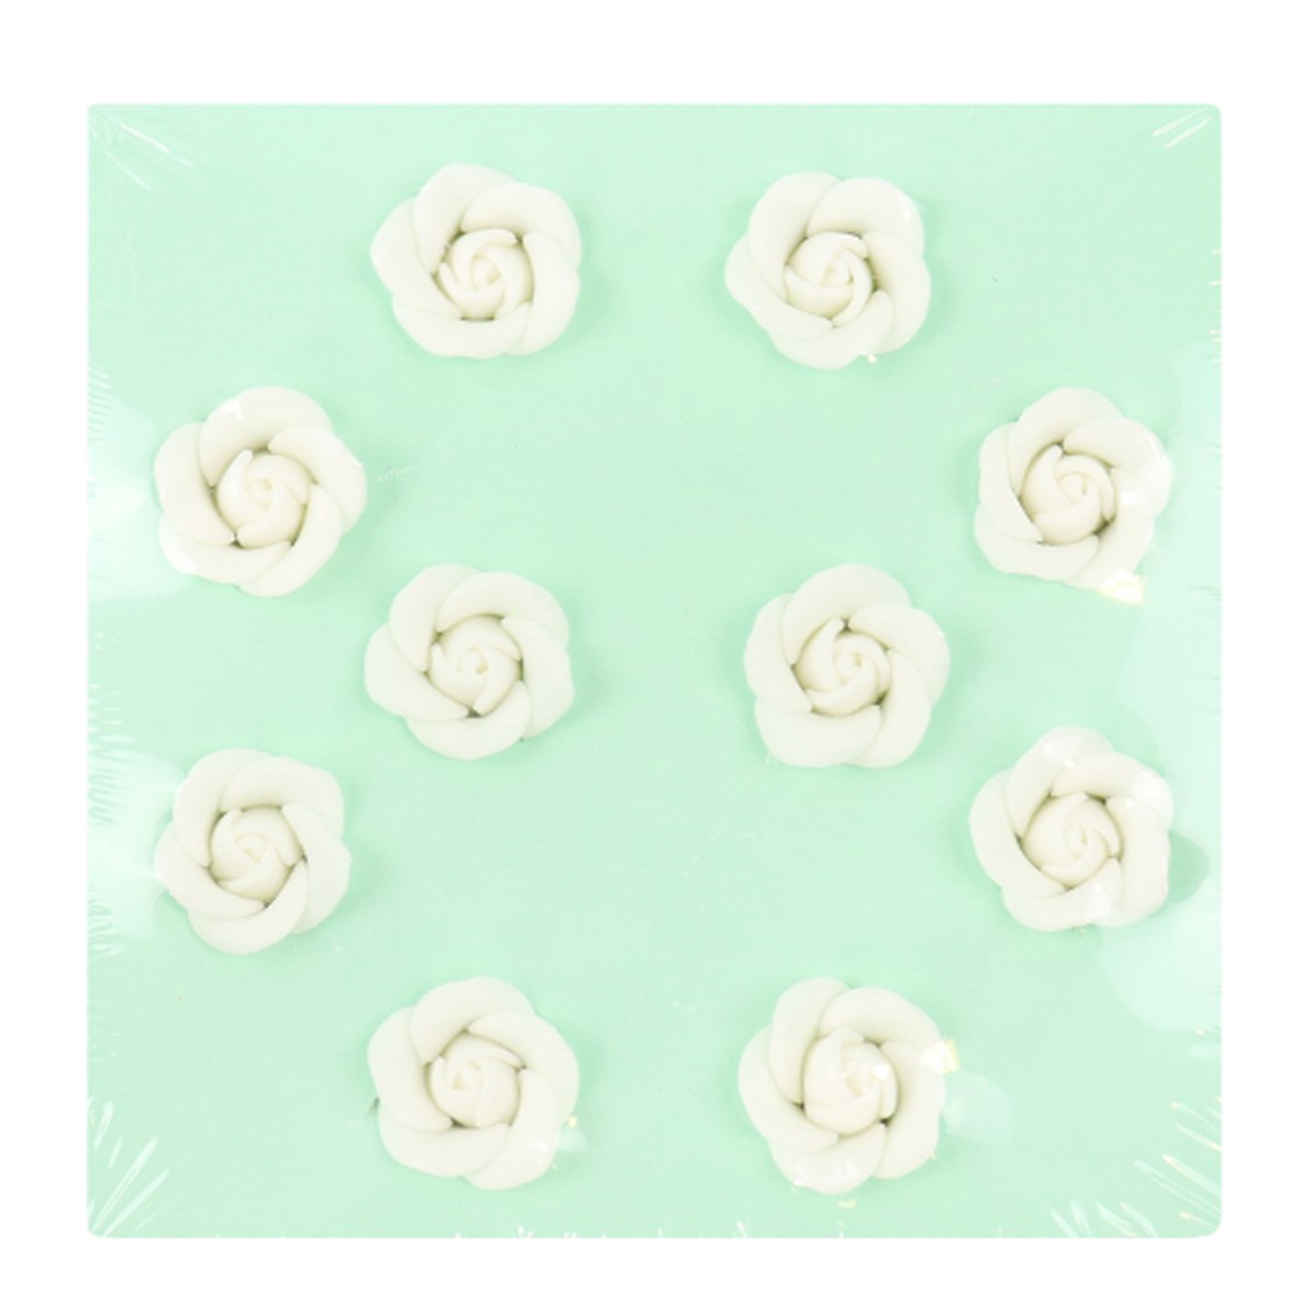 pme-white-sugar-roses-set10-25mm - PME White Sugar Roses Set of 10 